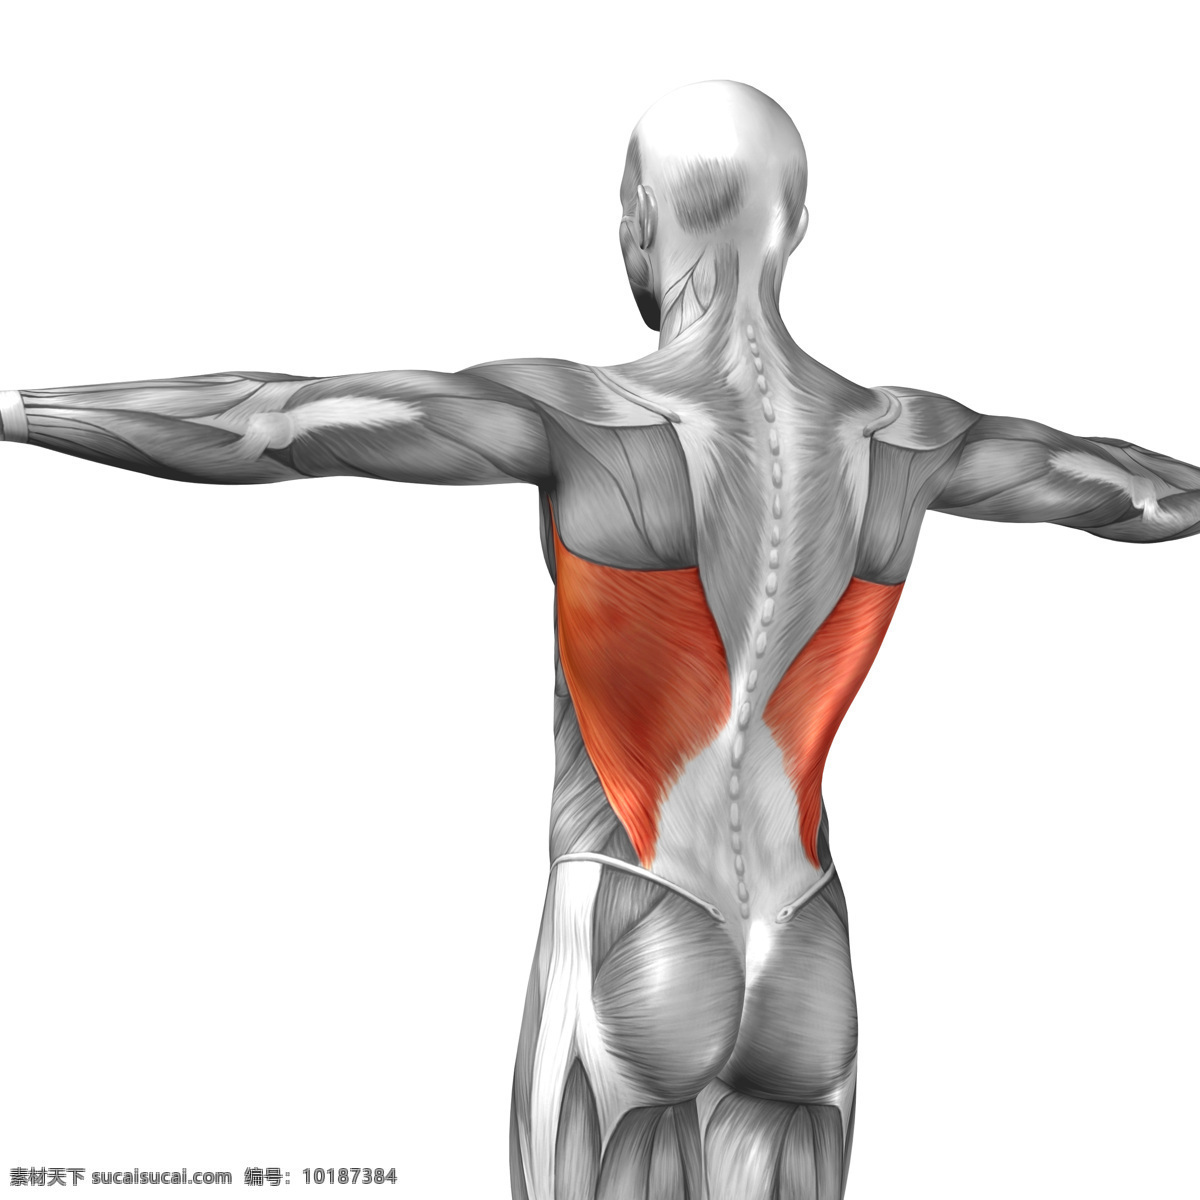 背部 受伤 人体 人体肌肉 人体器官 人体模型 人体结构图 受伤骨折 身体红肿 医疗护理 现代科技